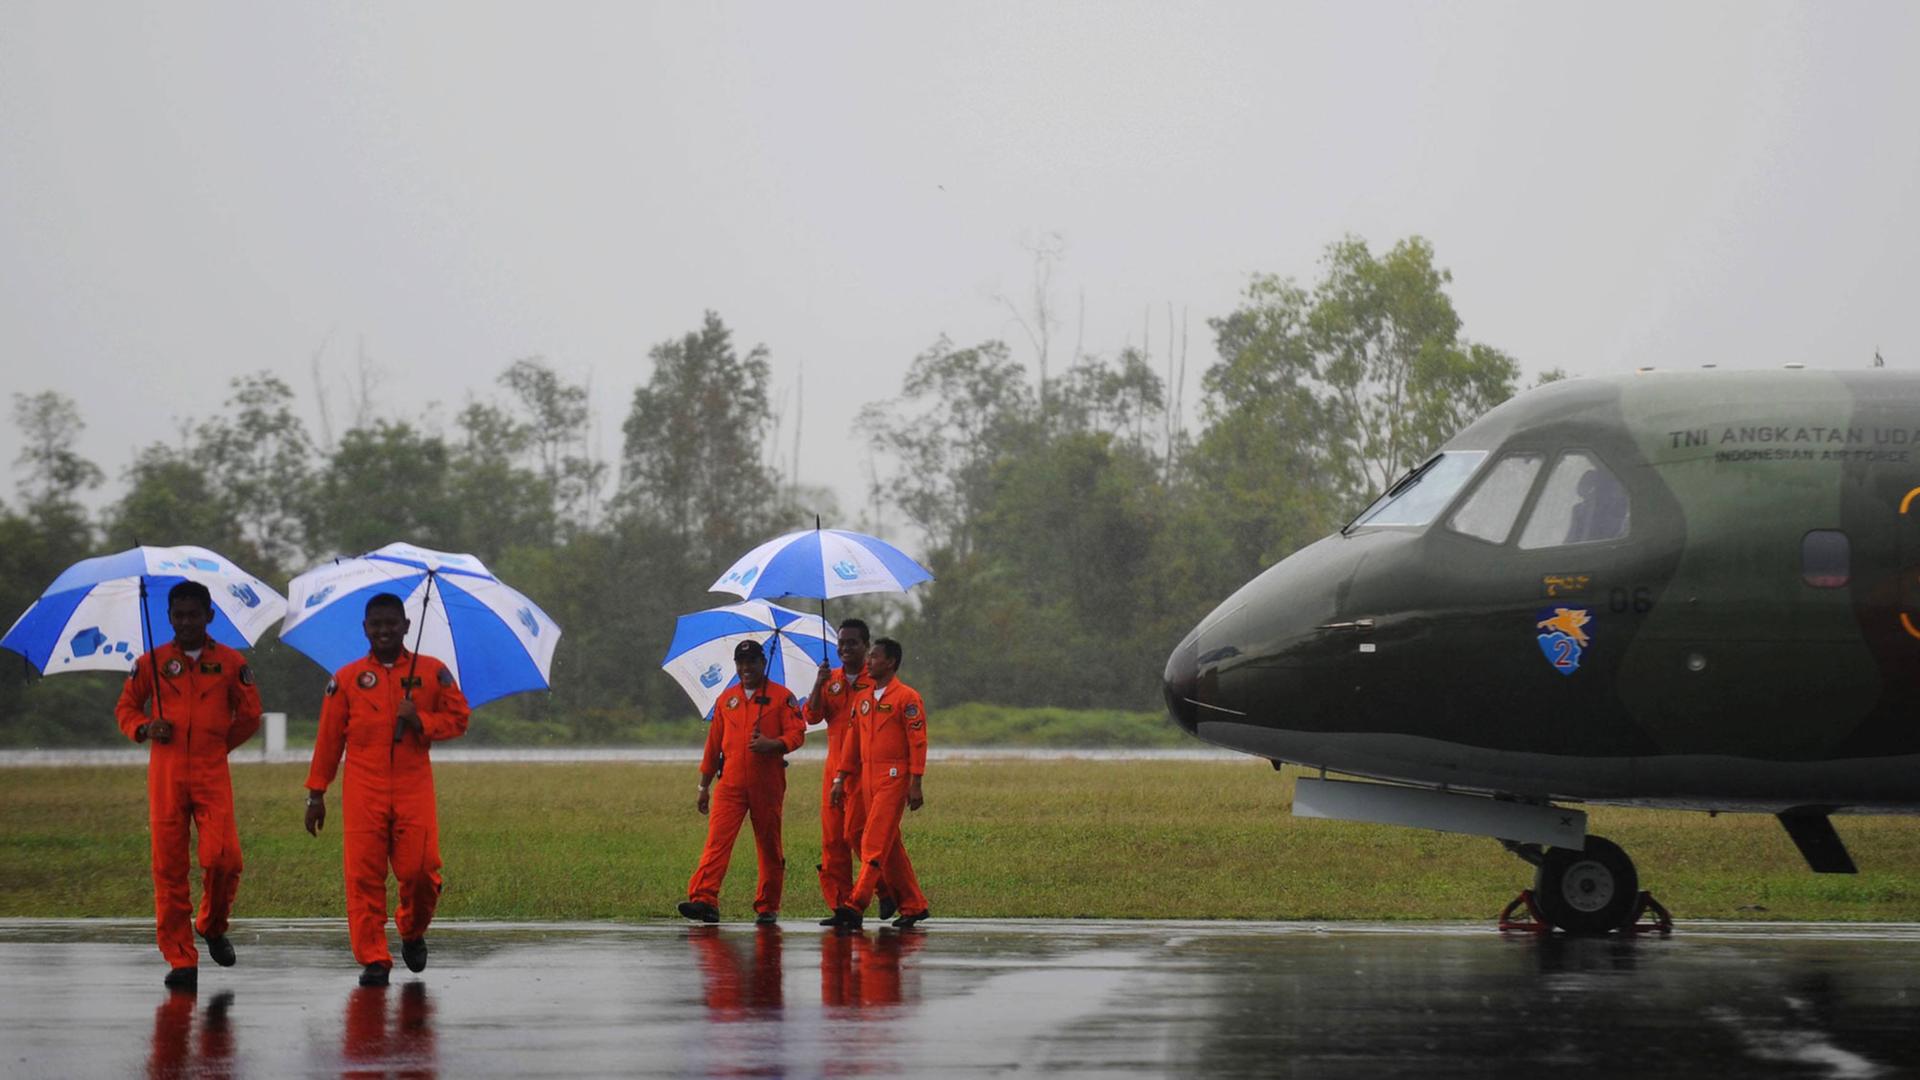 Vier Piloten der indonesischen Luftwaffe laufen mit Regenschirmen an einem Militärjet auf dem Rollfeld eines Flughafens entlang.